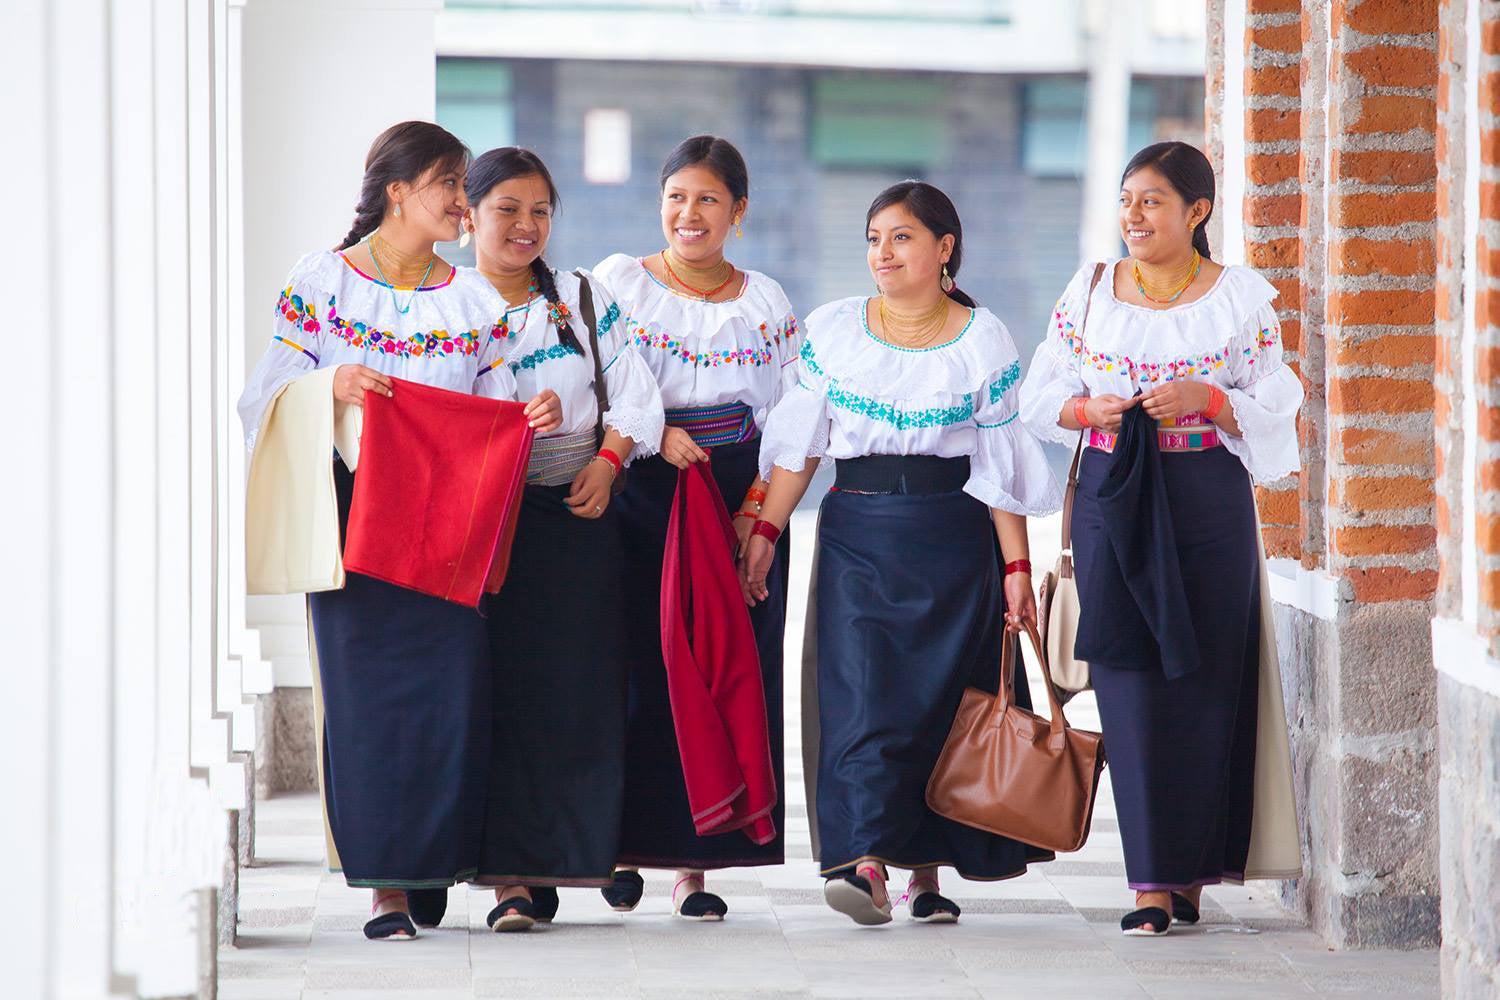 Cuatro mujeres indígenas caminando por un pasillo.